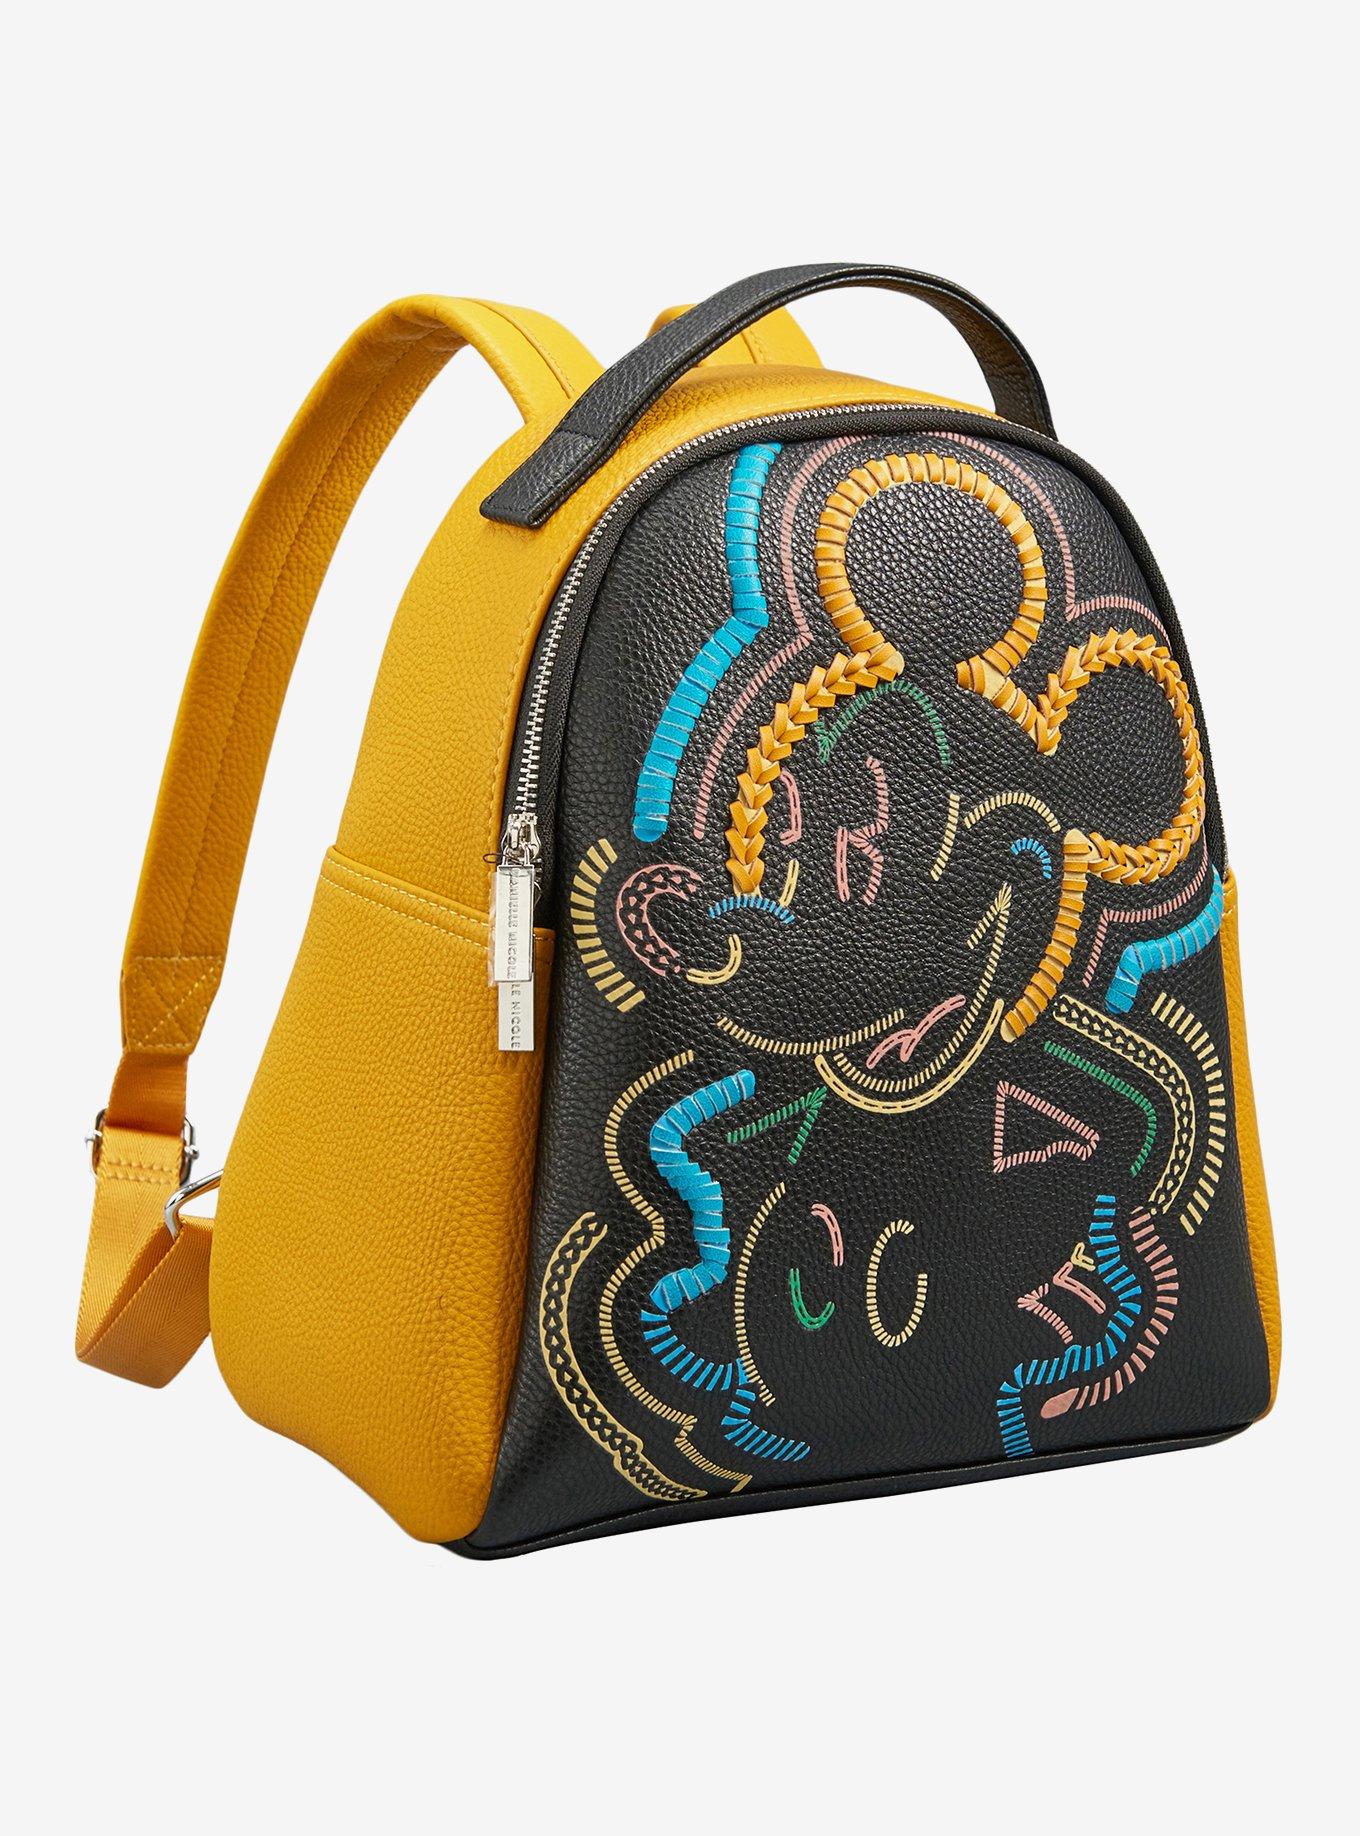 Danielle Nicole Disney Mickey Mouse Retro Multicolored Whipstitch Mini Backpack, , alternate